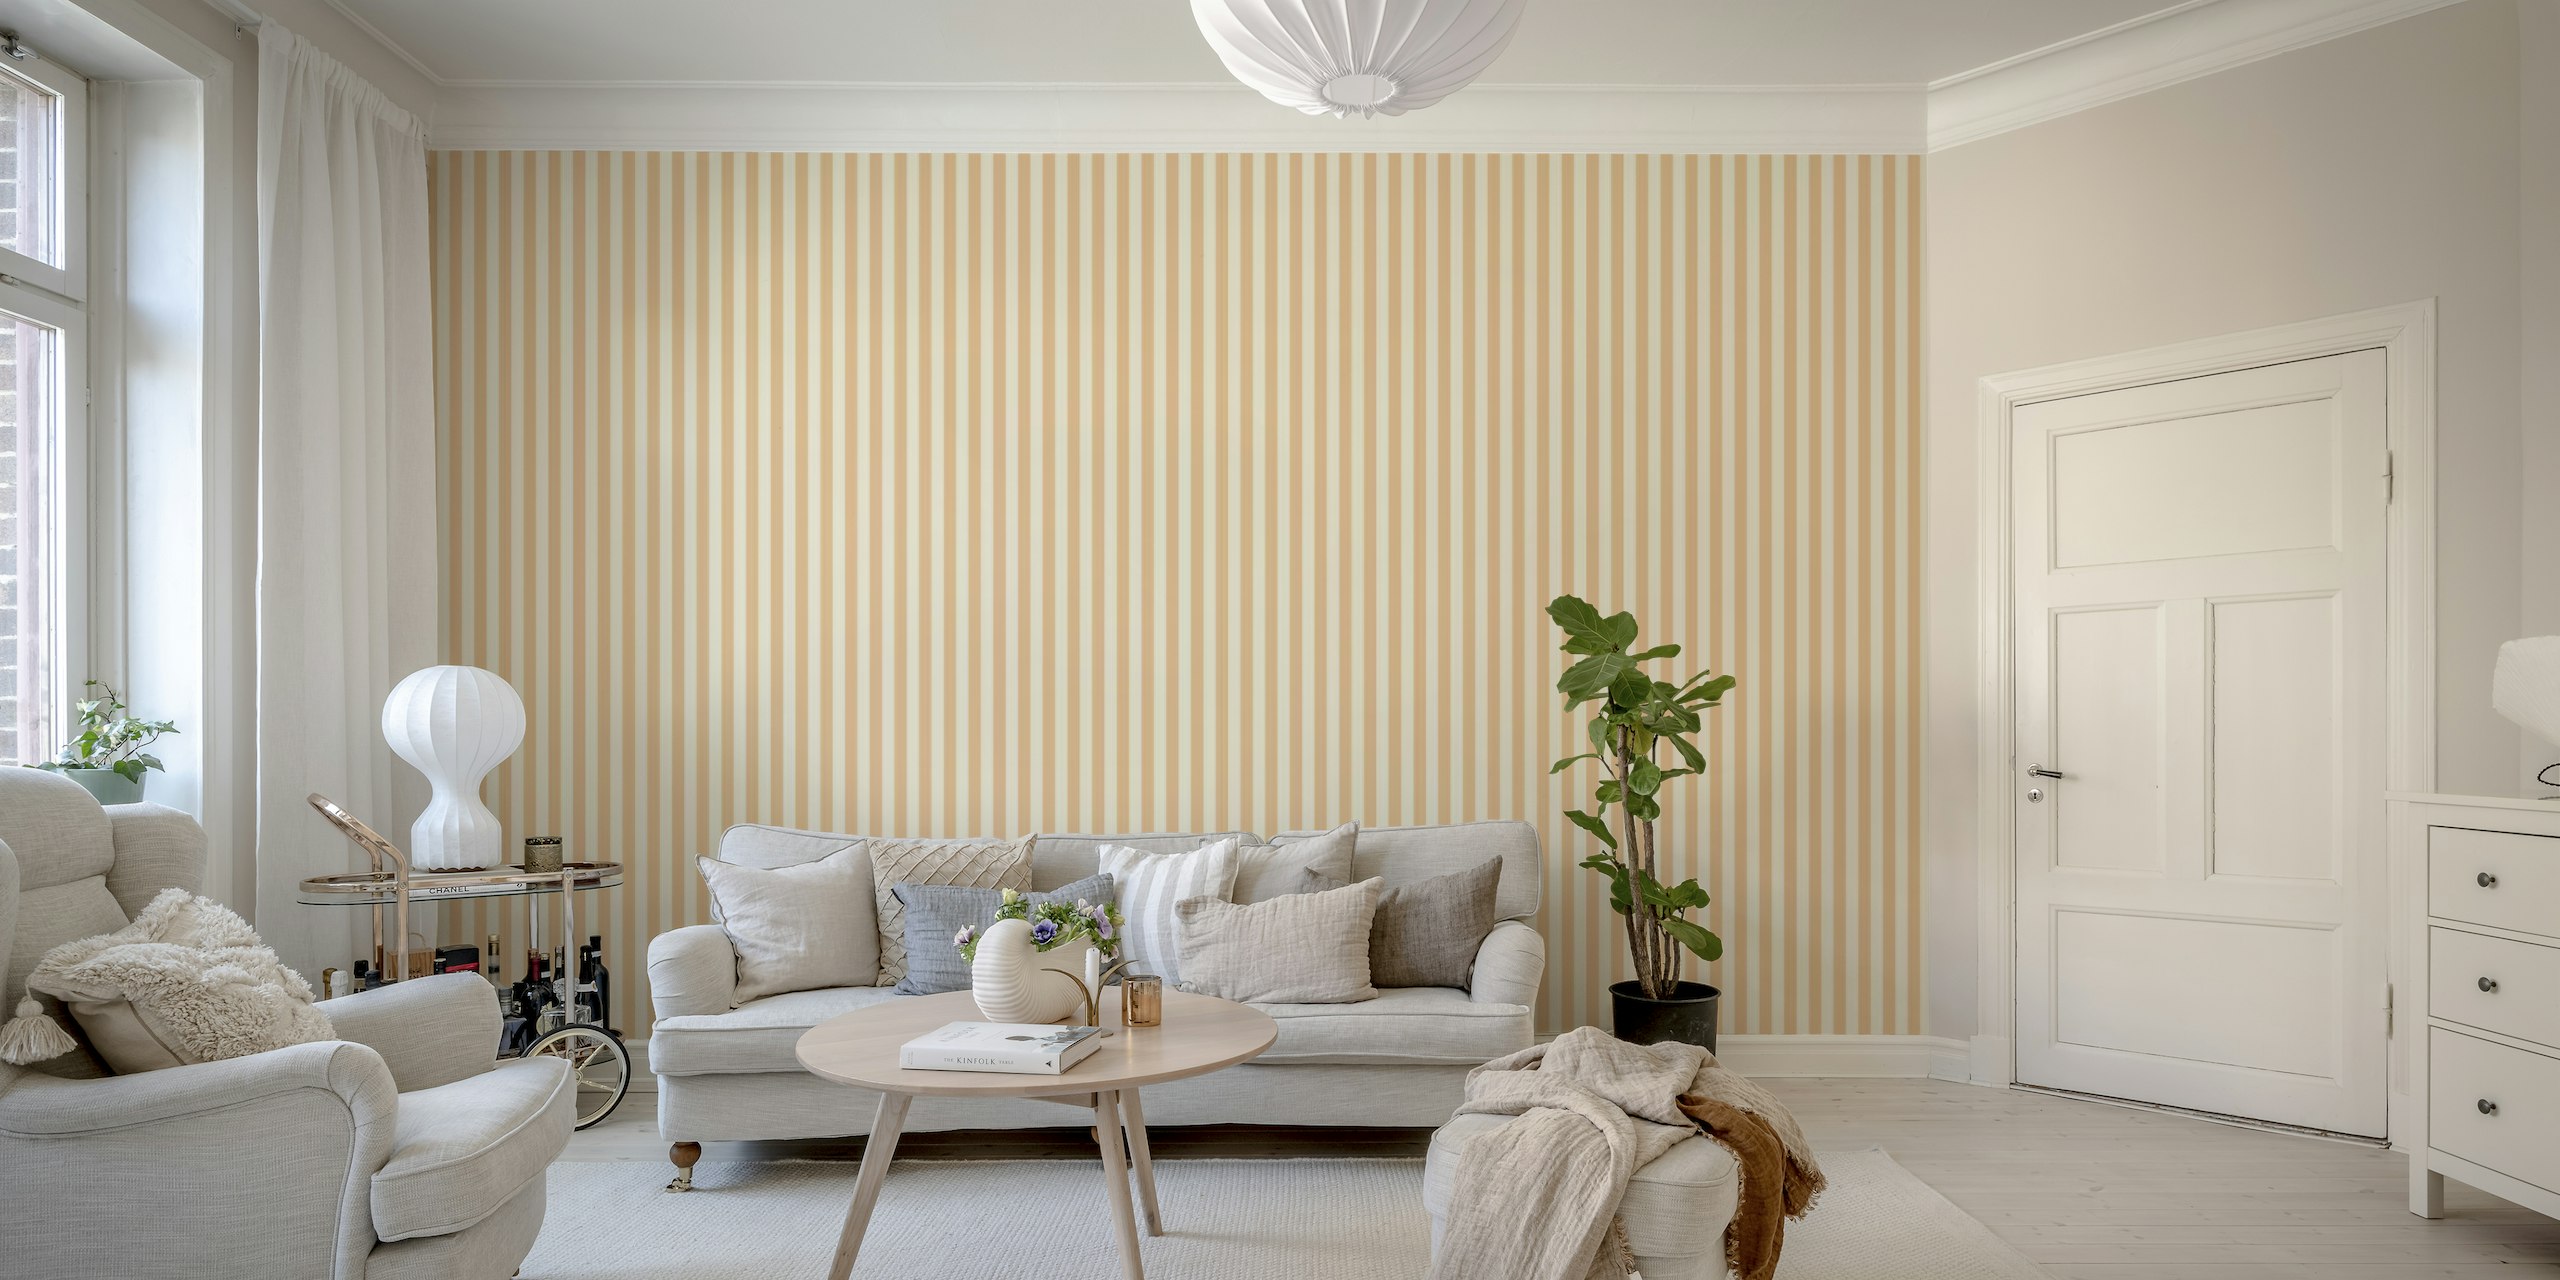 Stripes Normal Peach Fuzz - Mural de parede imaculado com tons suaves de pêssego e design minimalista